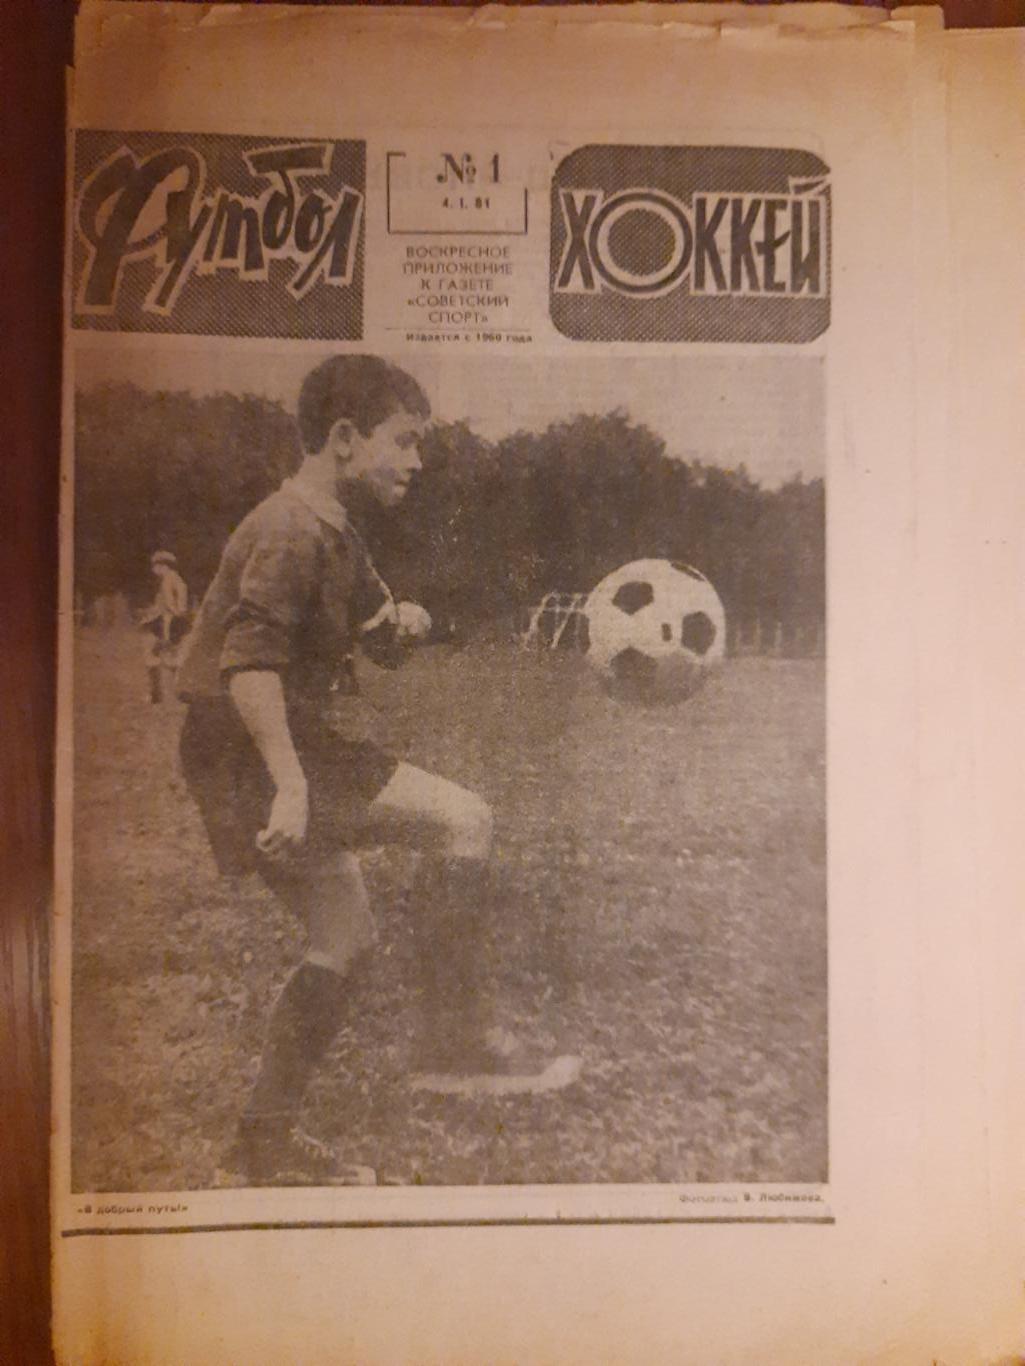 еженедельник футбол-хоккей #1 ,1981